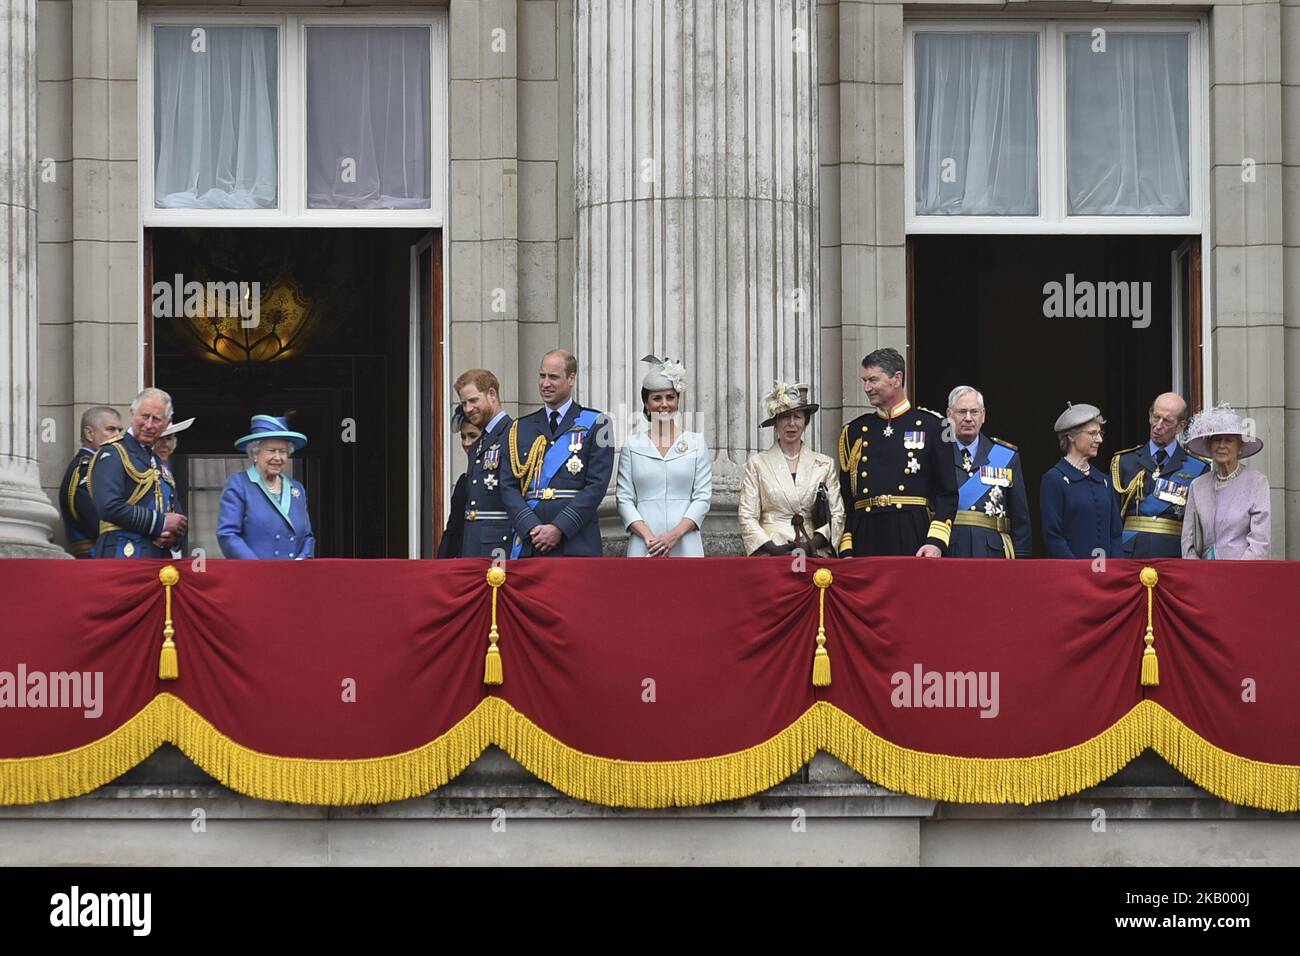 (G-D) Prince Charles, Prince de Galles, Prince Andrew, duc de York, Camilla, Duchesse de Cornwall, Reine Elizabeth II, Meghan, duchesse de Sussex, Prince Harry, Duc de Sussex, prince William, duc de Cambridge, Catherine, duchesse de Cambridge, Anne, Princesse Royale, Vice-amiral Sir Timothy Laurence, Prince Richard, duc de Gloucester, Birgitte, Duchesse de Gloucester, Le prince Edward, duc de Kent et Katharine, duchesse de Kent, regardent le flicast de la RAF sur le balcon du palais de Buckingham, tandis que des membres de la famille royale assistent à des événements marquant le centenaire de la RAF sur 10 juillet 2018 à Londres, en Angleterre Banque D'Images